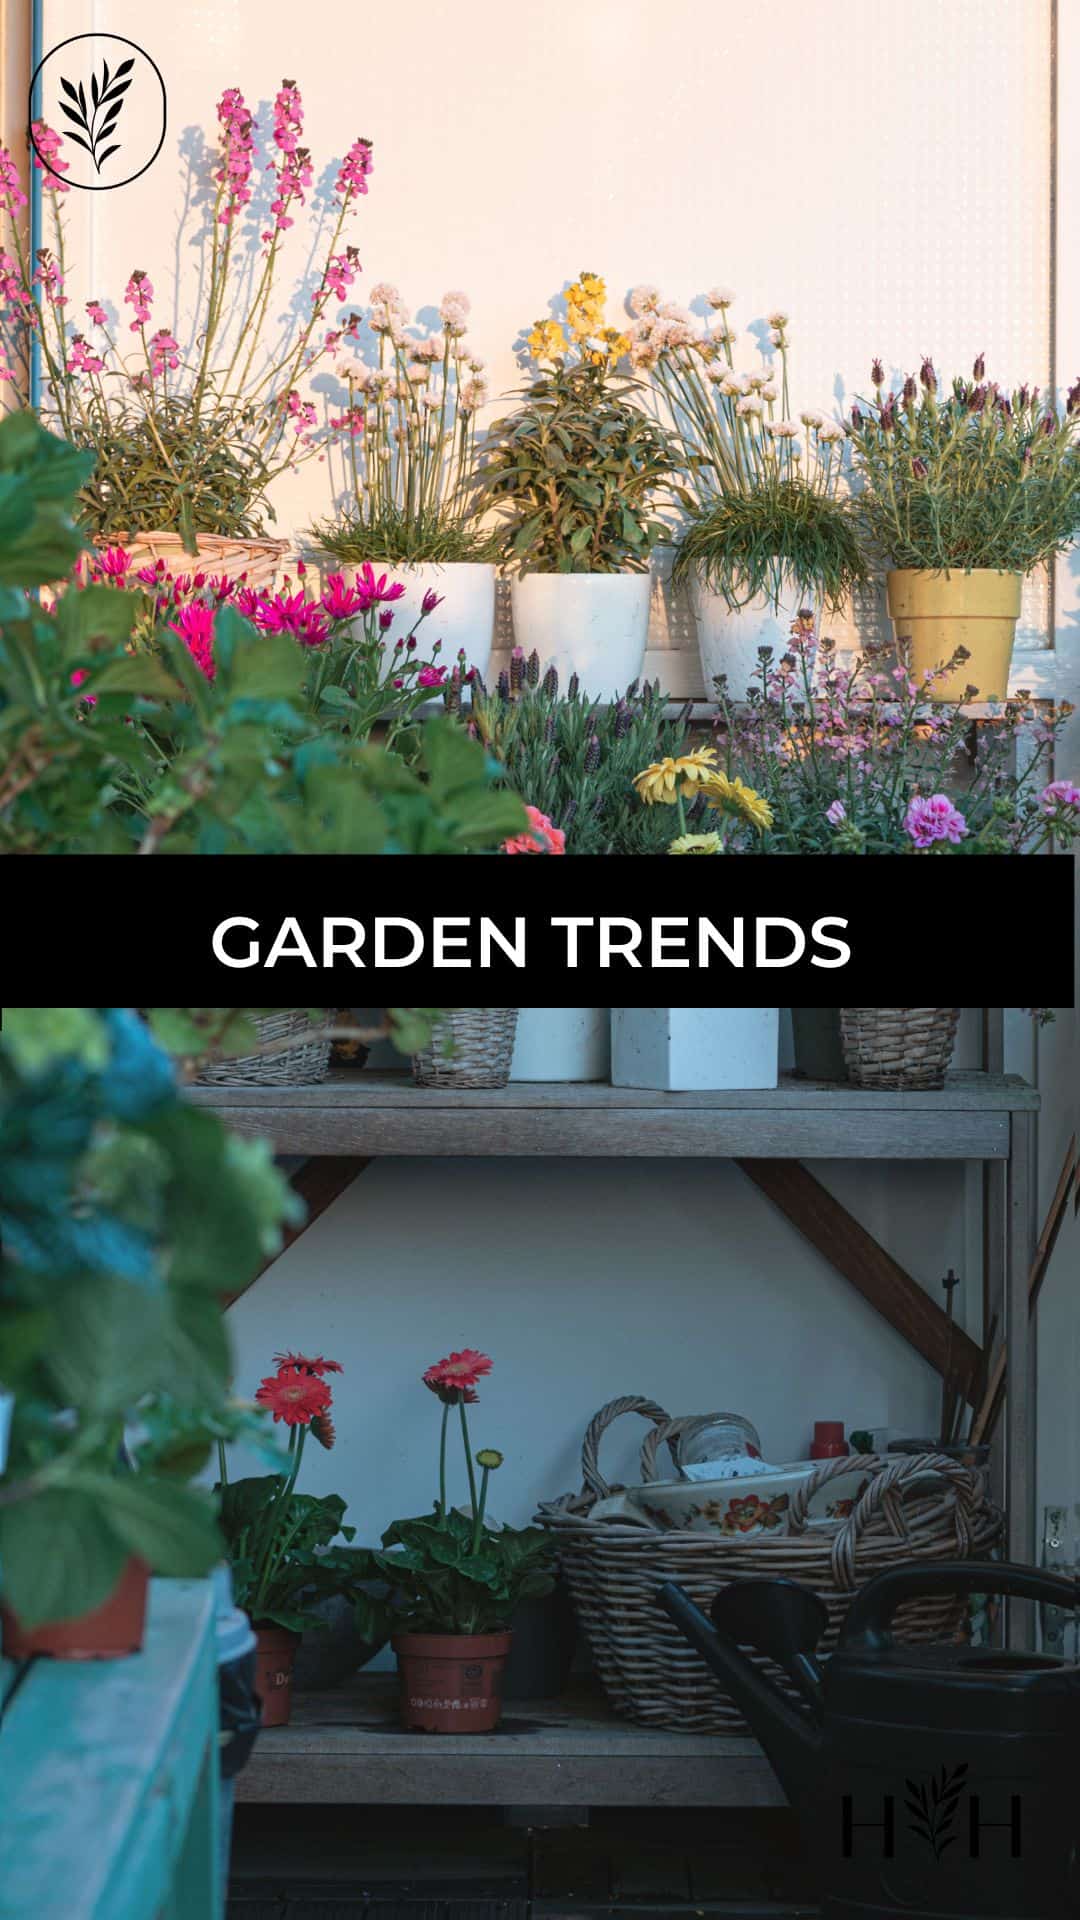 Garden trends via @home4theharvest